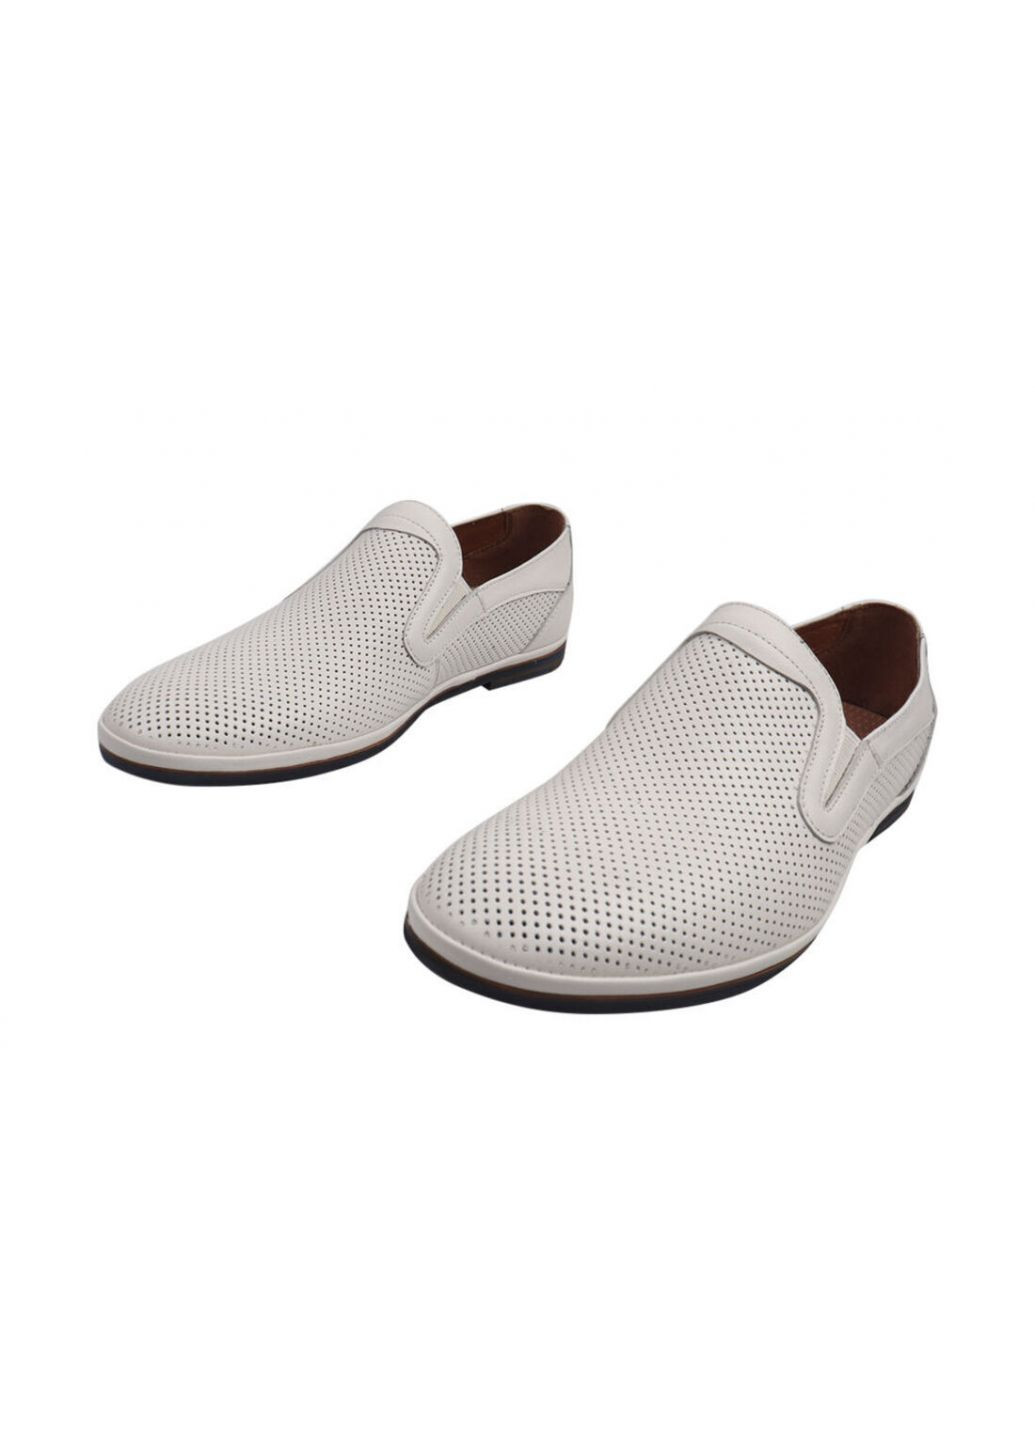 Белые туфли мужские из натуральной кожи, на низком ходу, цвет белый, Emillio Landini